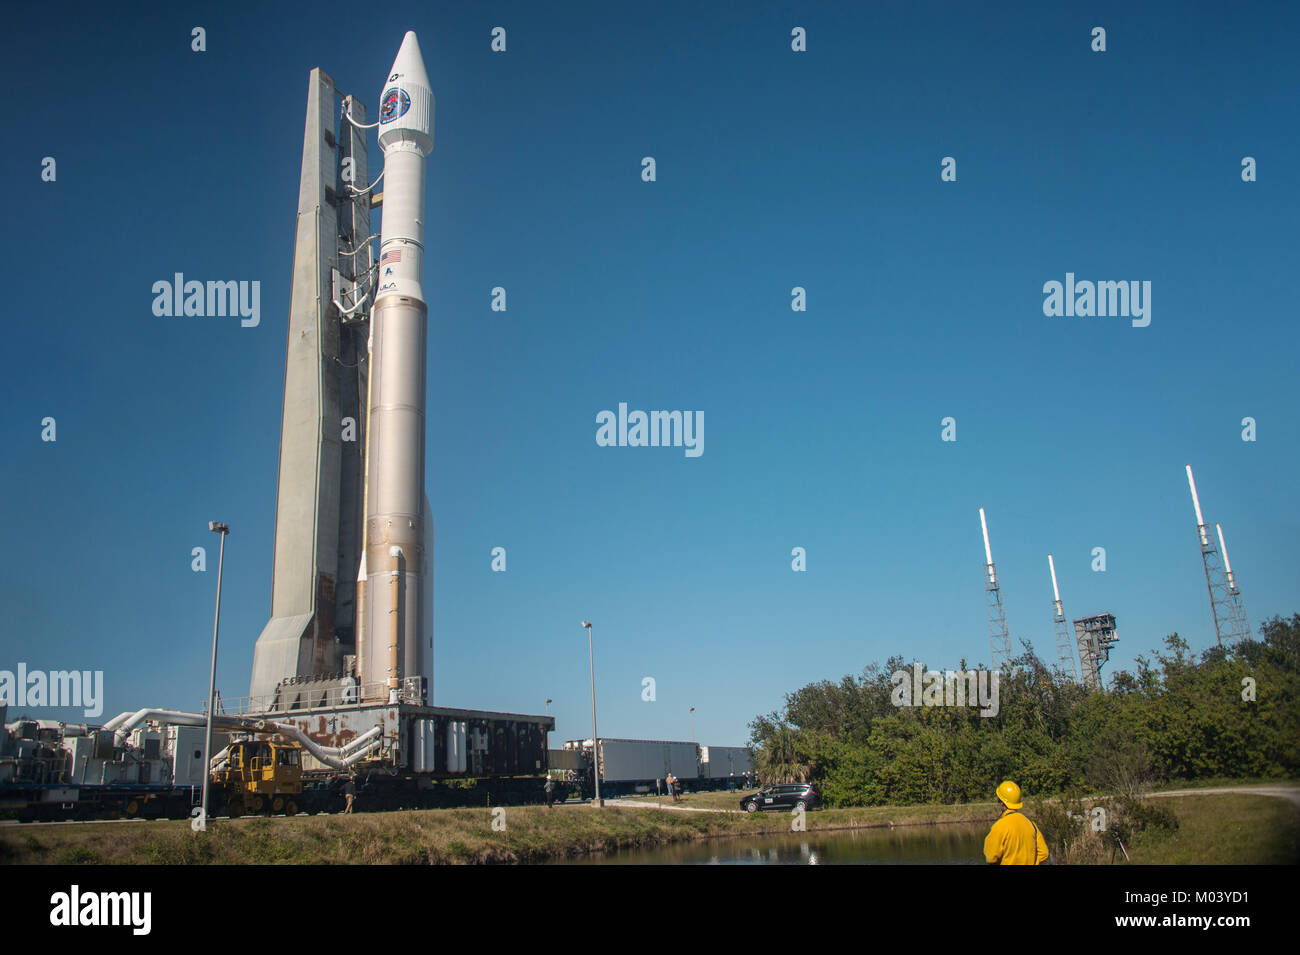 La estación de la Fuerza Aérea de Cabo Cañaveral, Florida, Estados Unidos. El 17 de enero de 2018, una alianza de naciones de lanzamiento del cohete Atlas V llevando el SBIRS GEO 4 vuelo la carga se acumula en preparación para el lanzamiento en el Complejo de Lanzamiento Espacial 41 de la Estación Cañaveral de la Fuerza Aérea el 17 de enero de 2018, en Cabo Cañaveral, Florida. El sistema de infrarrojos basados en el espacio para la misión de la Fuerza Aérea de los Estados Unidos está programada para ser lanzada el 18 de enero. Crédito: Planetpix/Alamy Live News Foto de stock